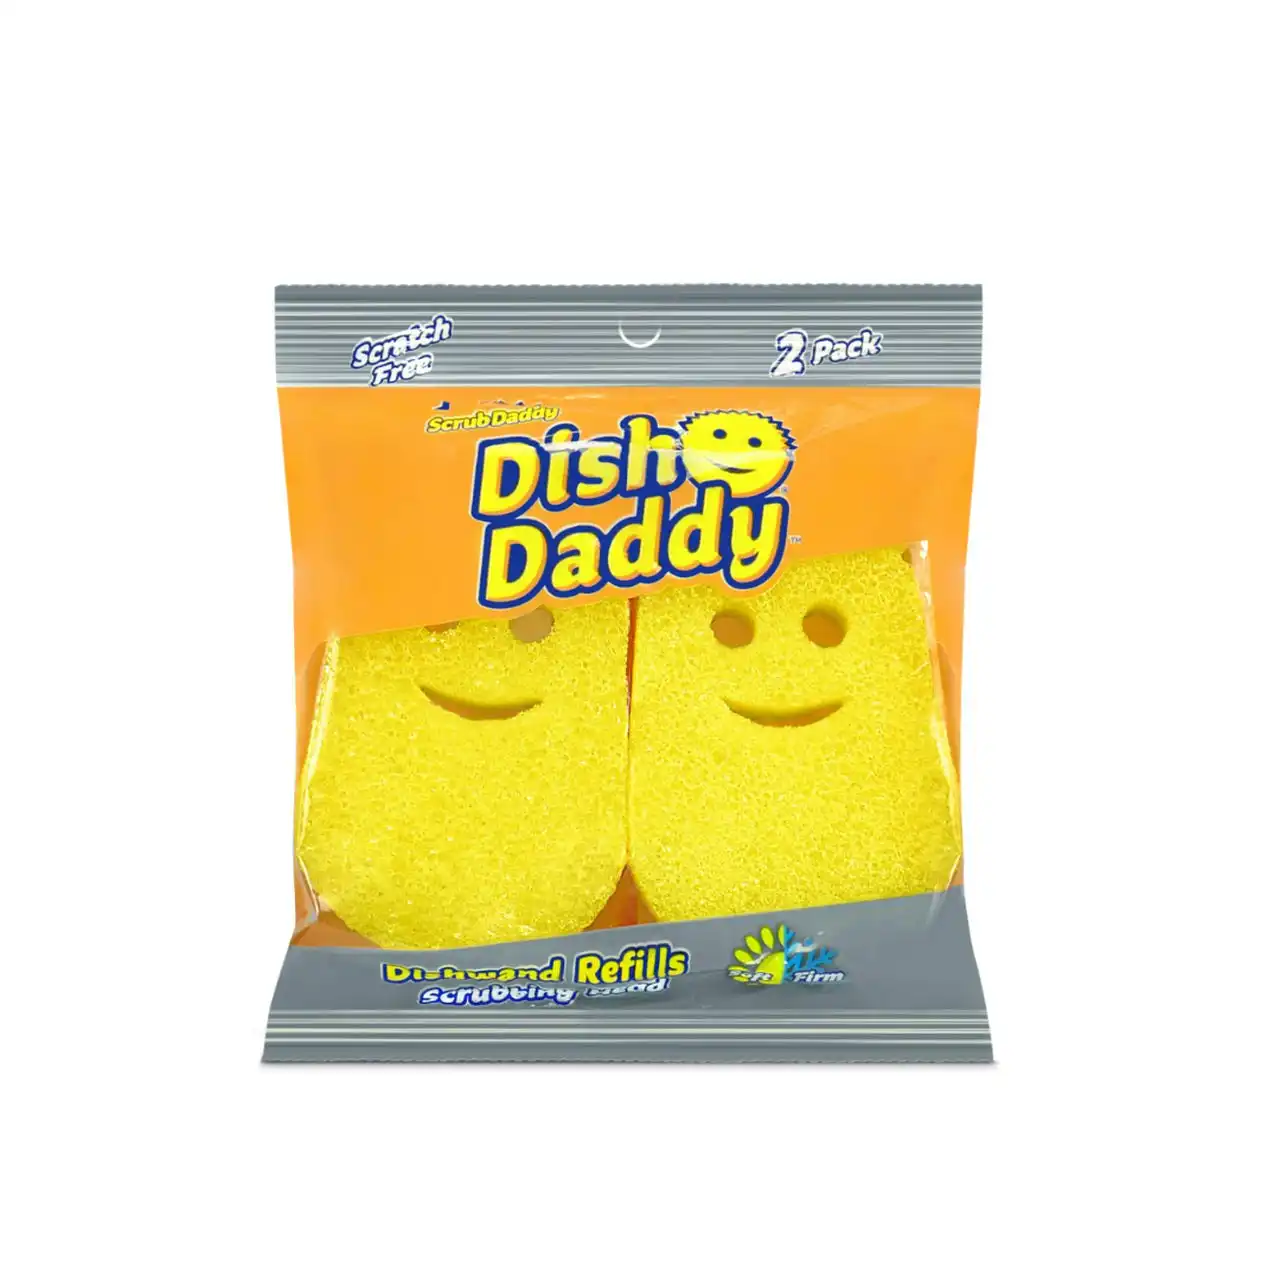 Scrub Daddy Dish Daddy Refills (2 Pack)